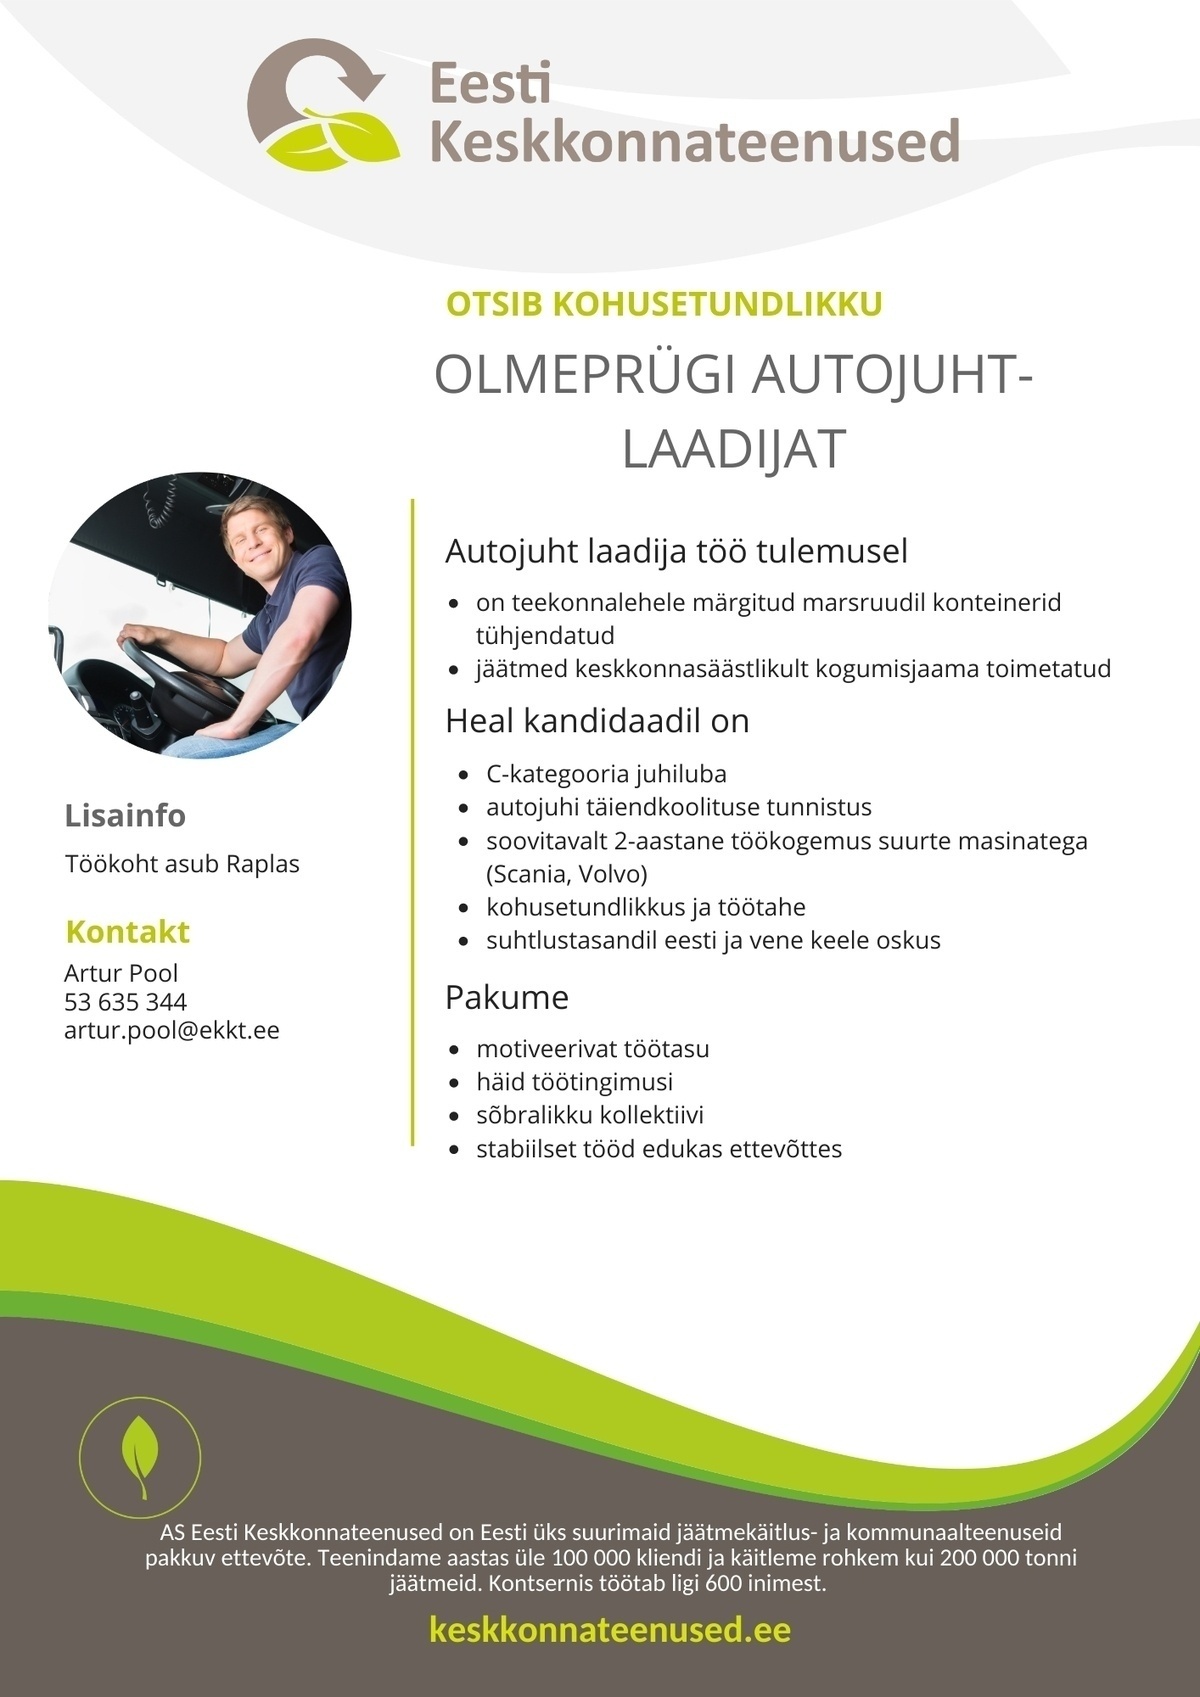 Eesti Keskkonnateenused AS Olmeprügi autojuht-laadija